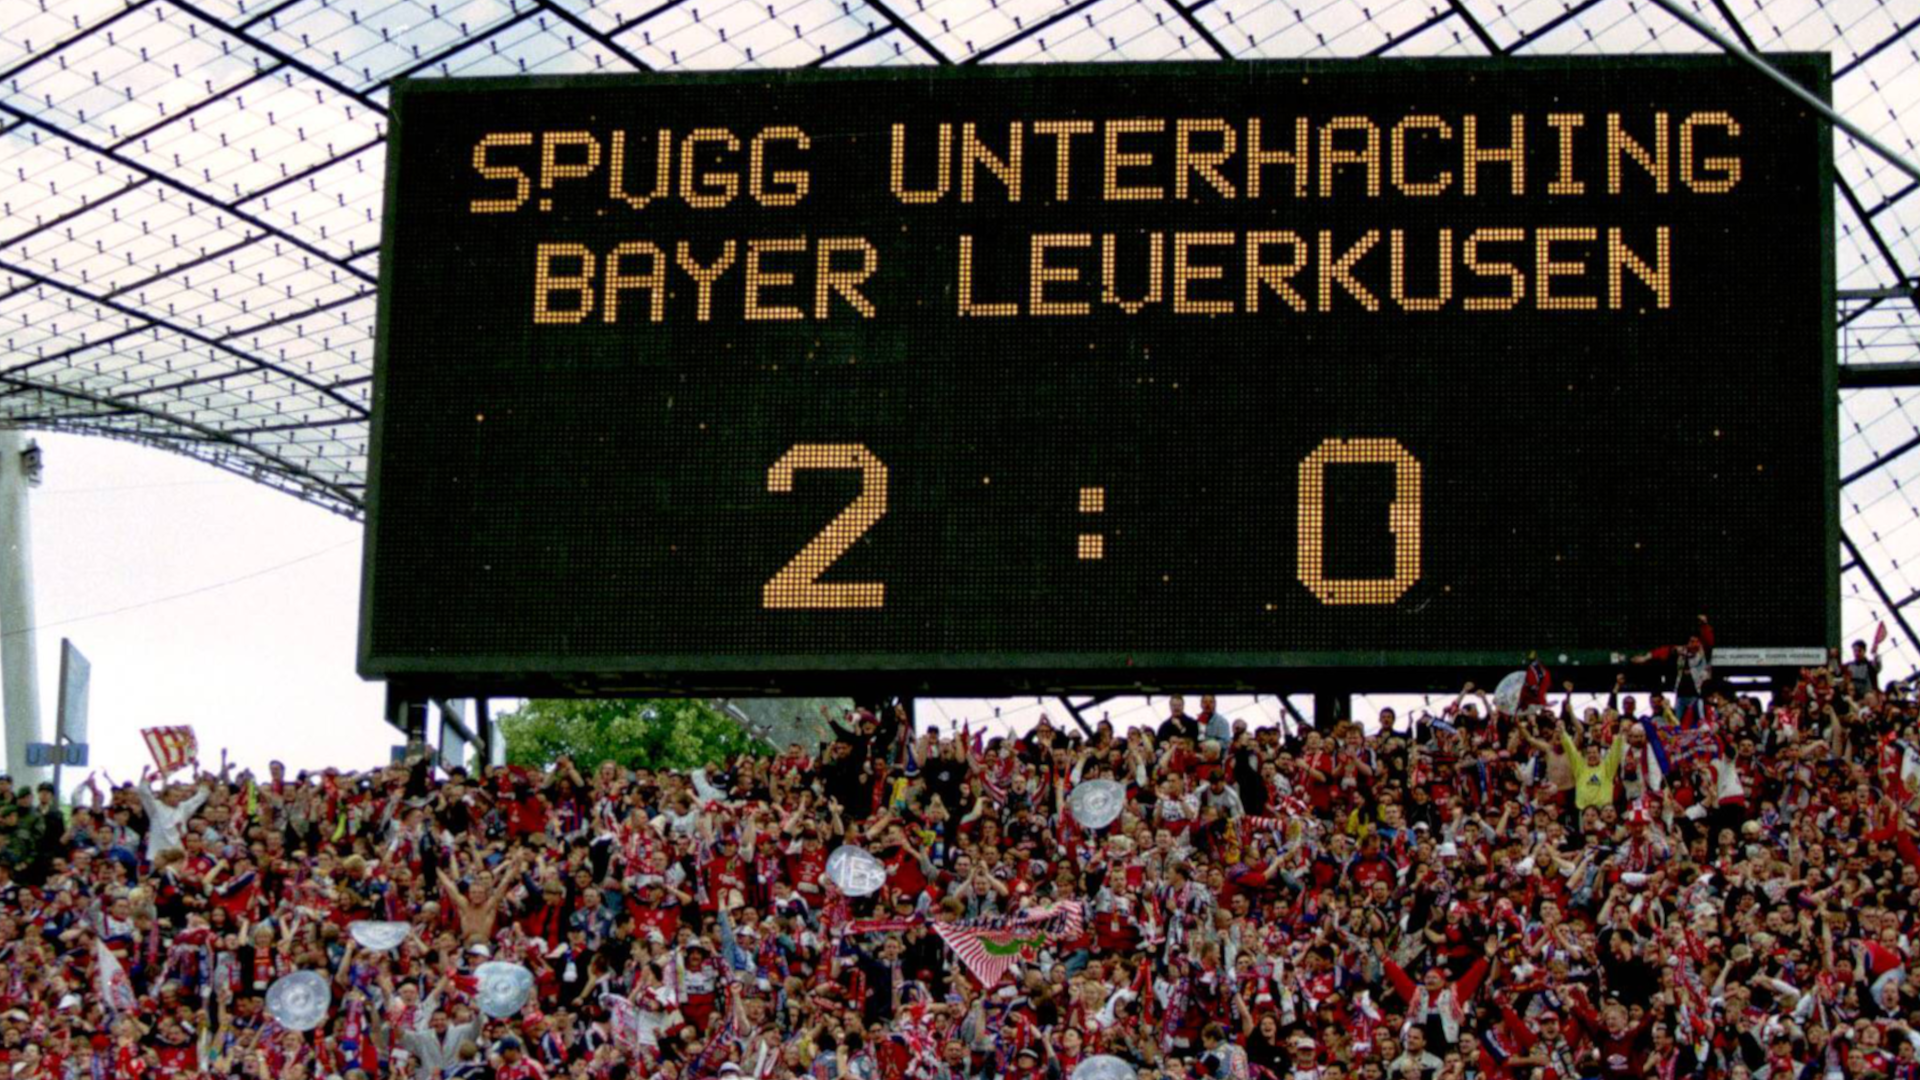 
                <strong>Unterhaching in der Fußball-Bundesliga</strong><br>
                Einige Dinge ändern sich wohl nie. Der amtierende Fußball-Meister hieß FC Bayern München. In der Bundesliga spielten vor 21 Jahren noch Vereine wie die SpVgg Unterhaching, 1860 München oder der Hamburger SV. 
              